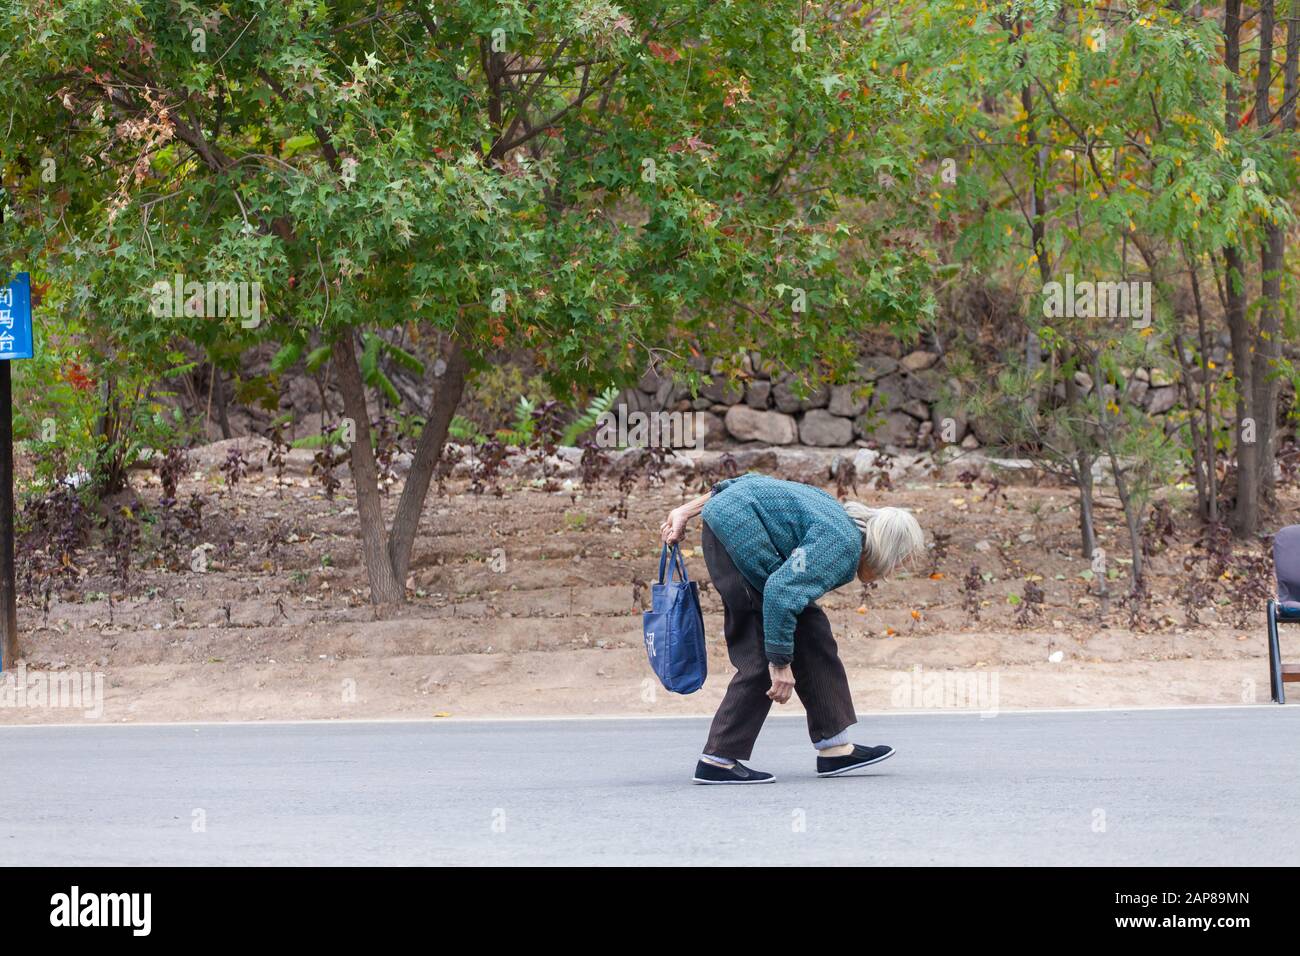 Una vecchia signora in eccessiva posizione di camminata di hunchback, la vita continua malgrado la difficoltà. Foto Stock